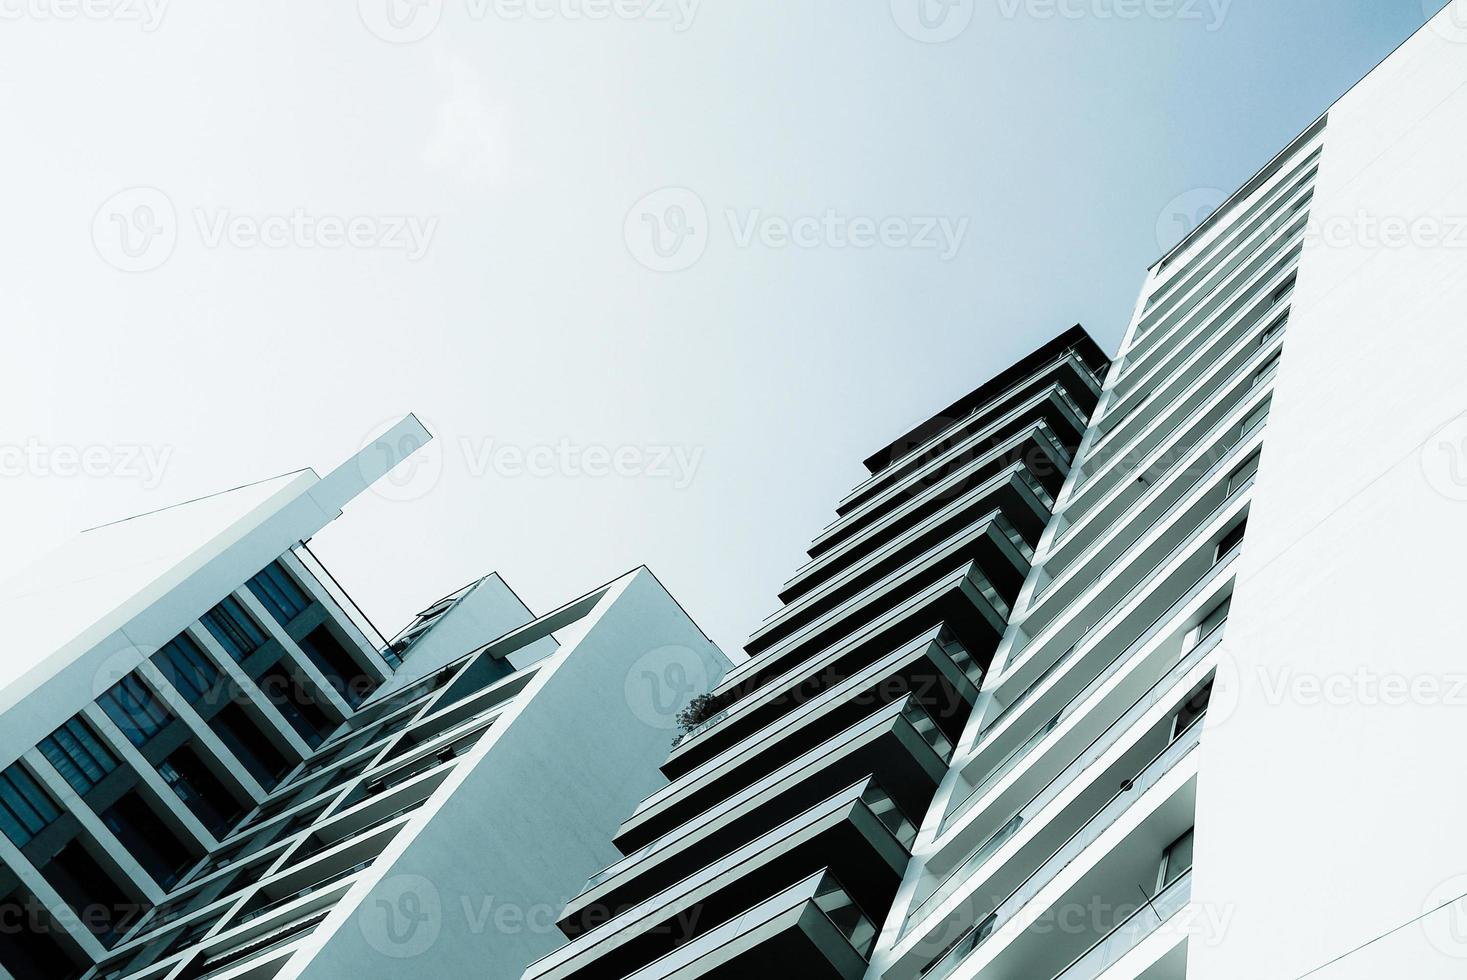 blauw zwart-wit beeld van moderne woongebouwen met meerdere verdiepingen foto